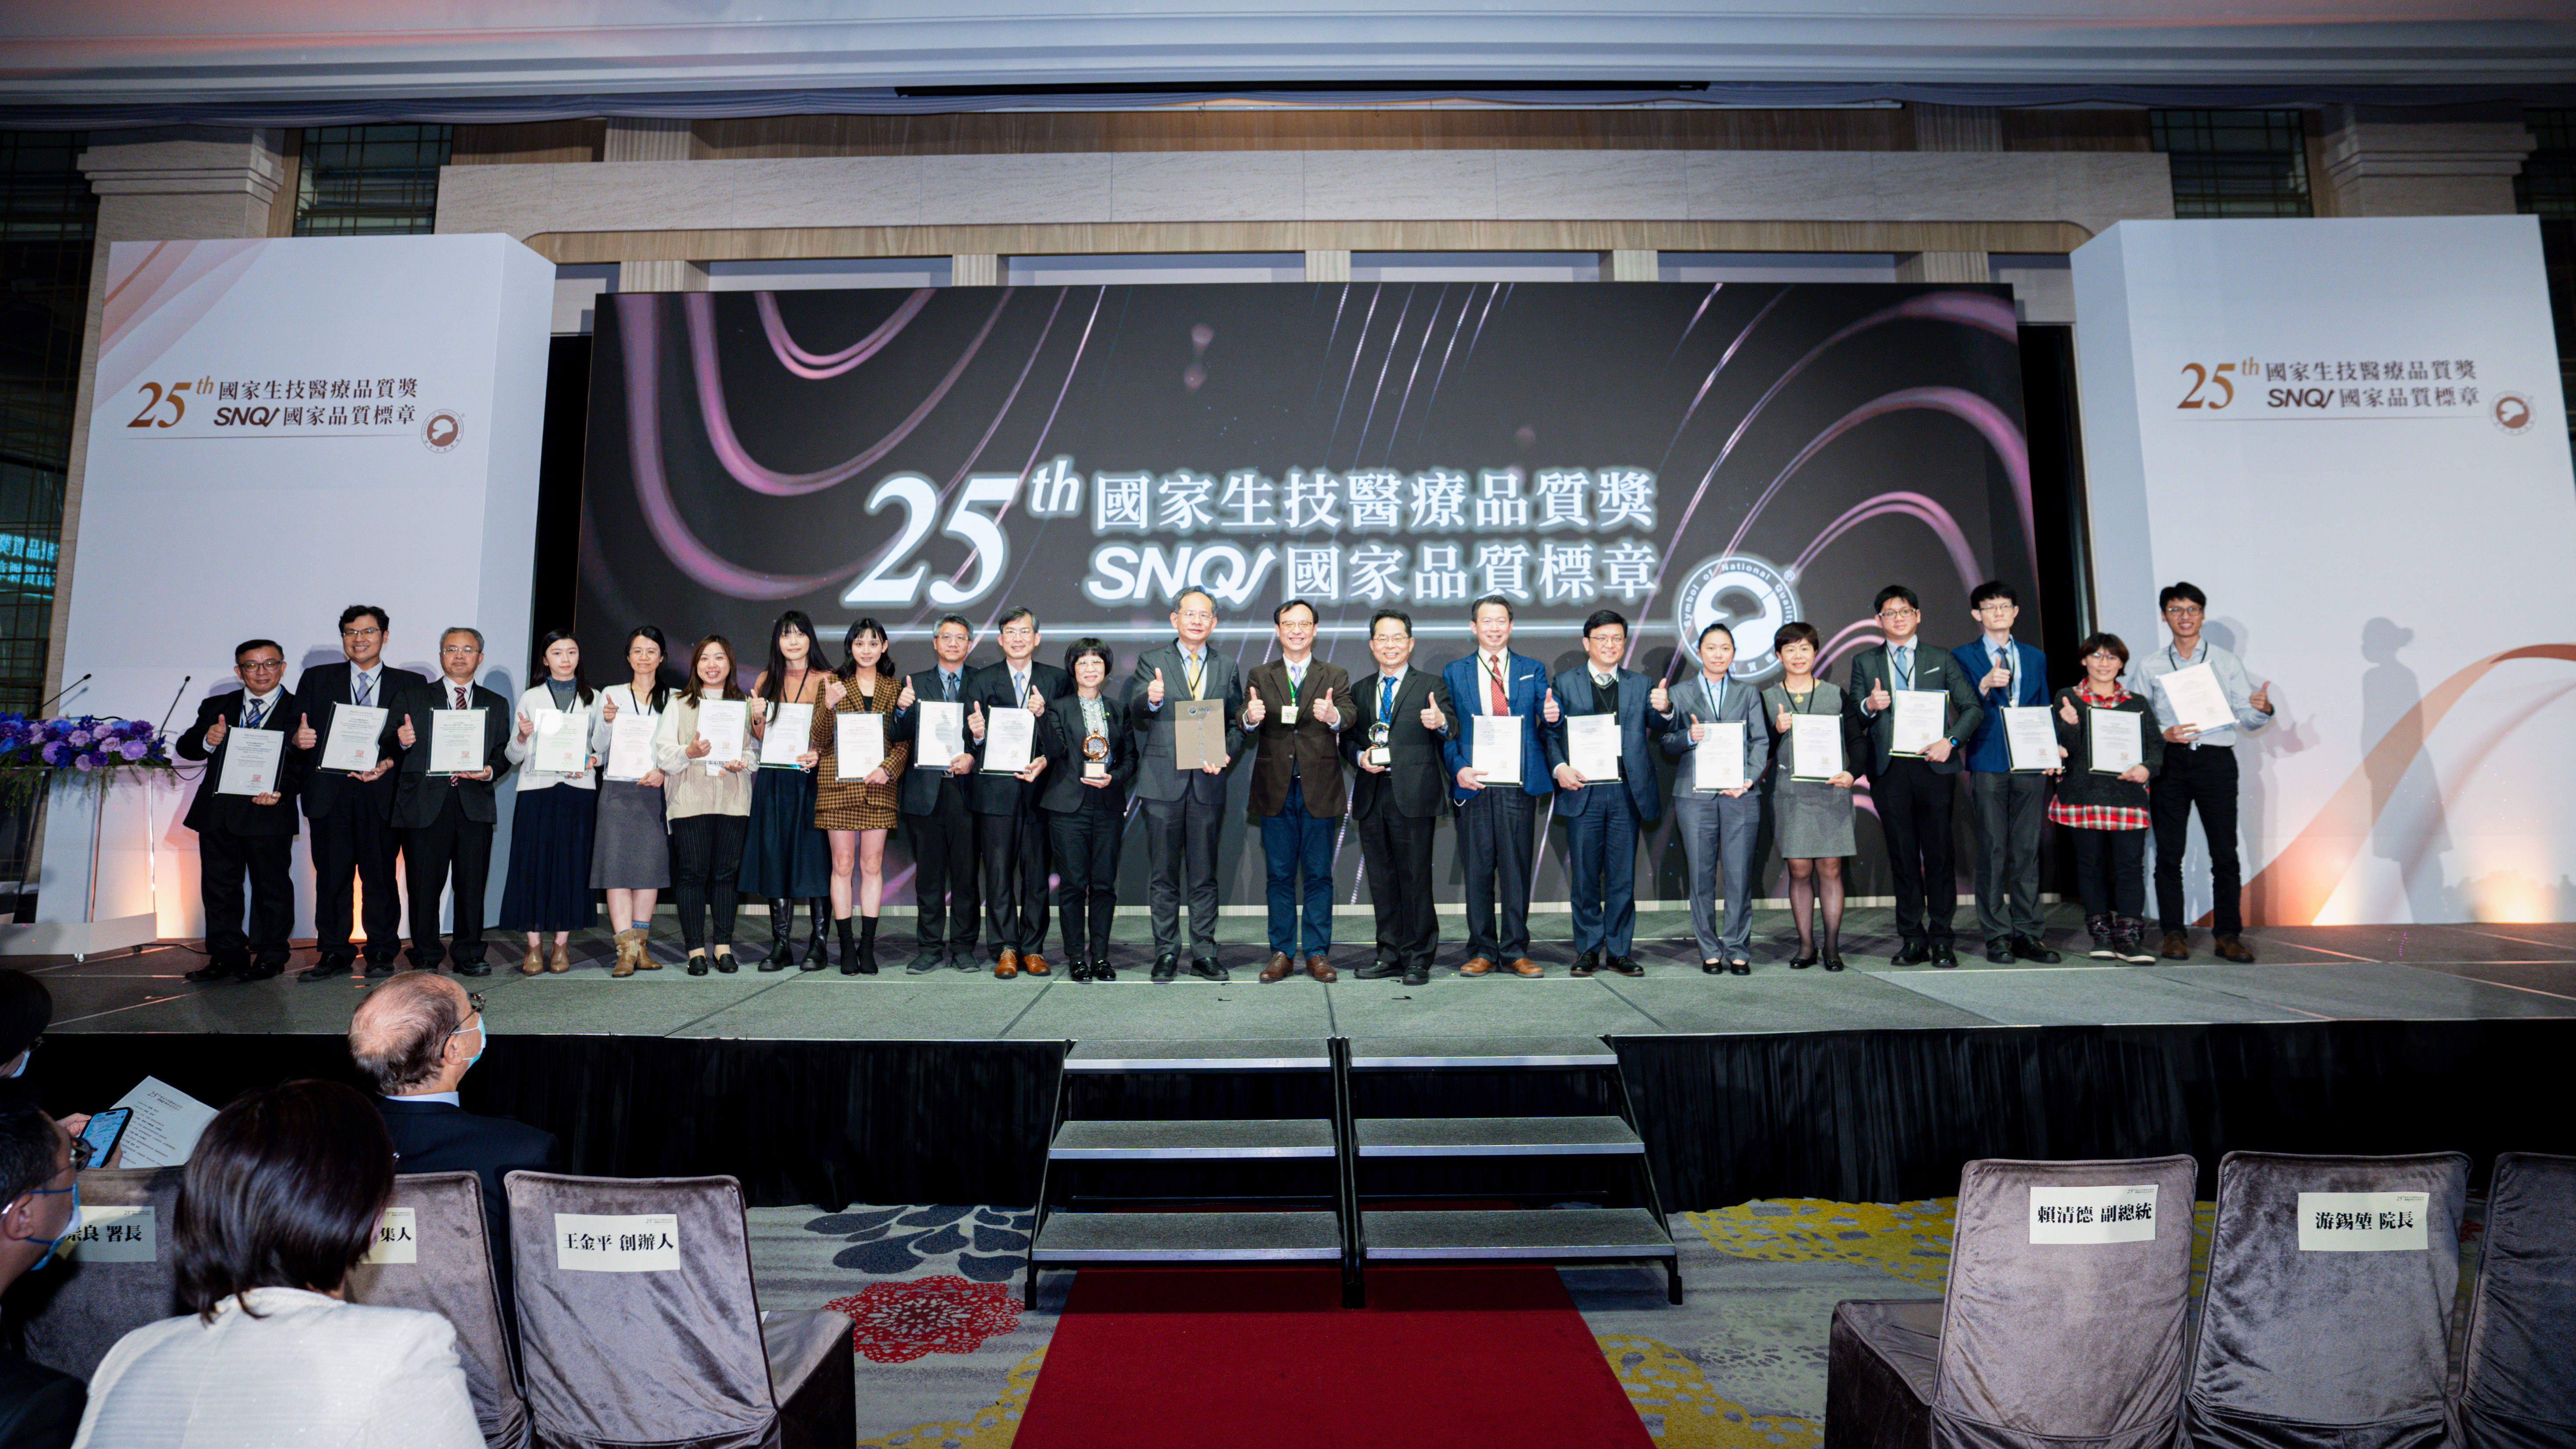 第25屆國家生技醫療品質獎本院團隊領獎獎照片